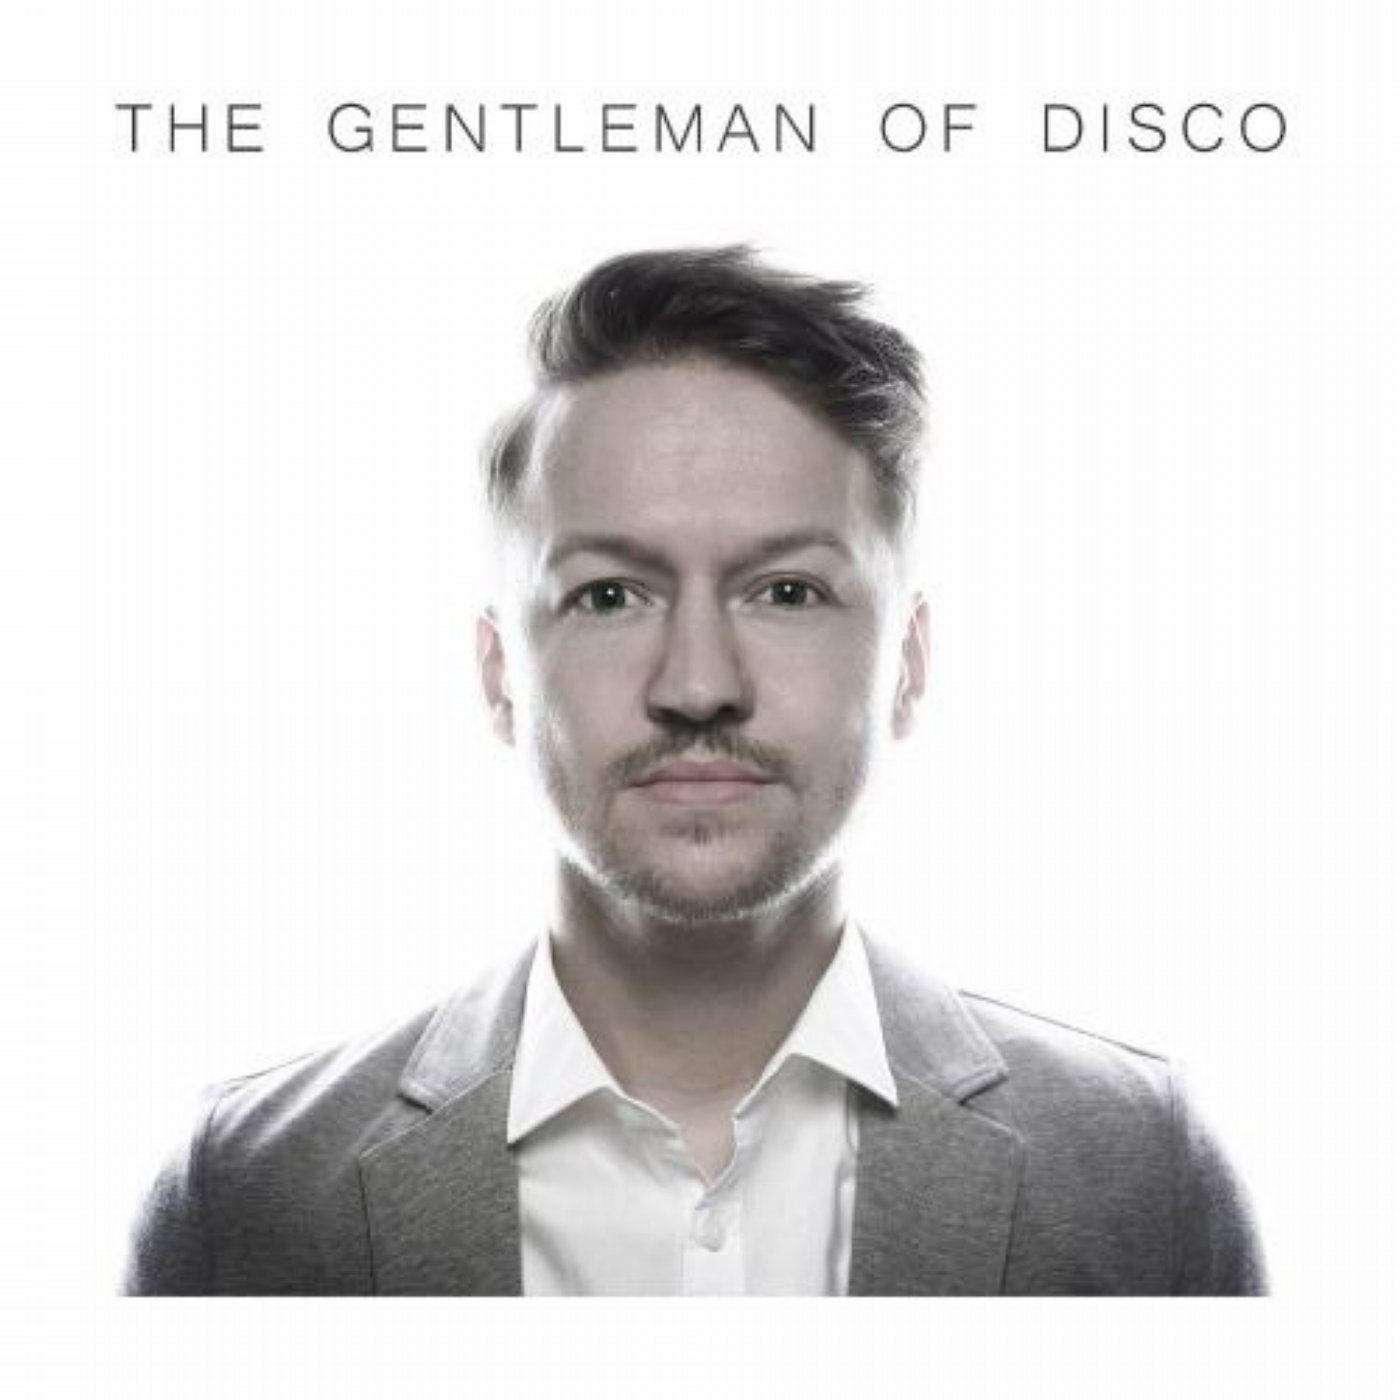 The Gentleman of Disco